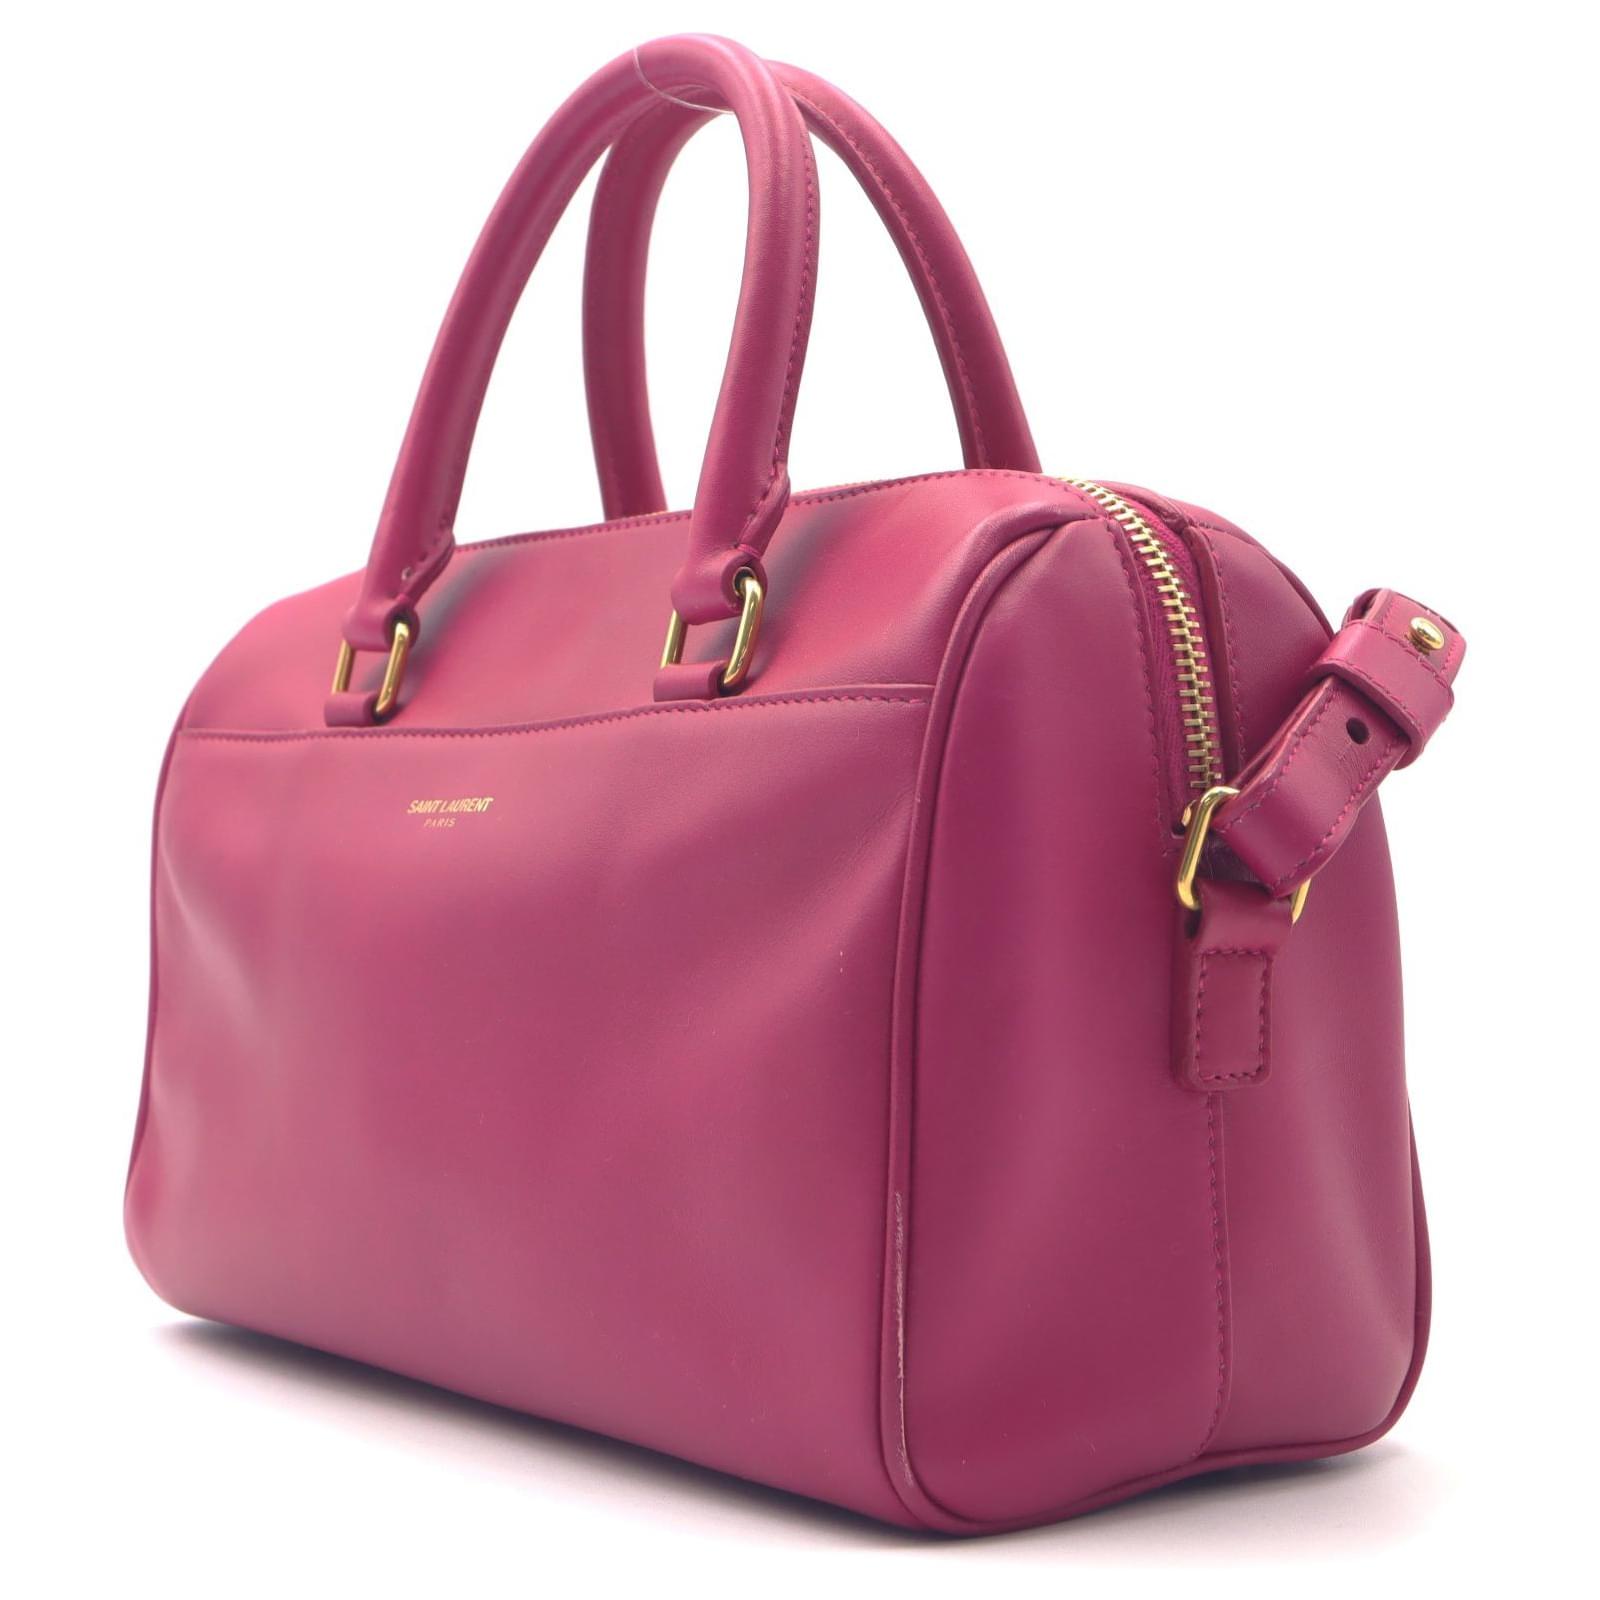 Saint Laurent 504924 0hg0n 6805 2way Bag Handbag Shoulder Bag Leather Women Red